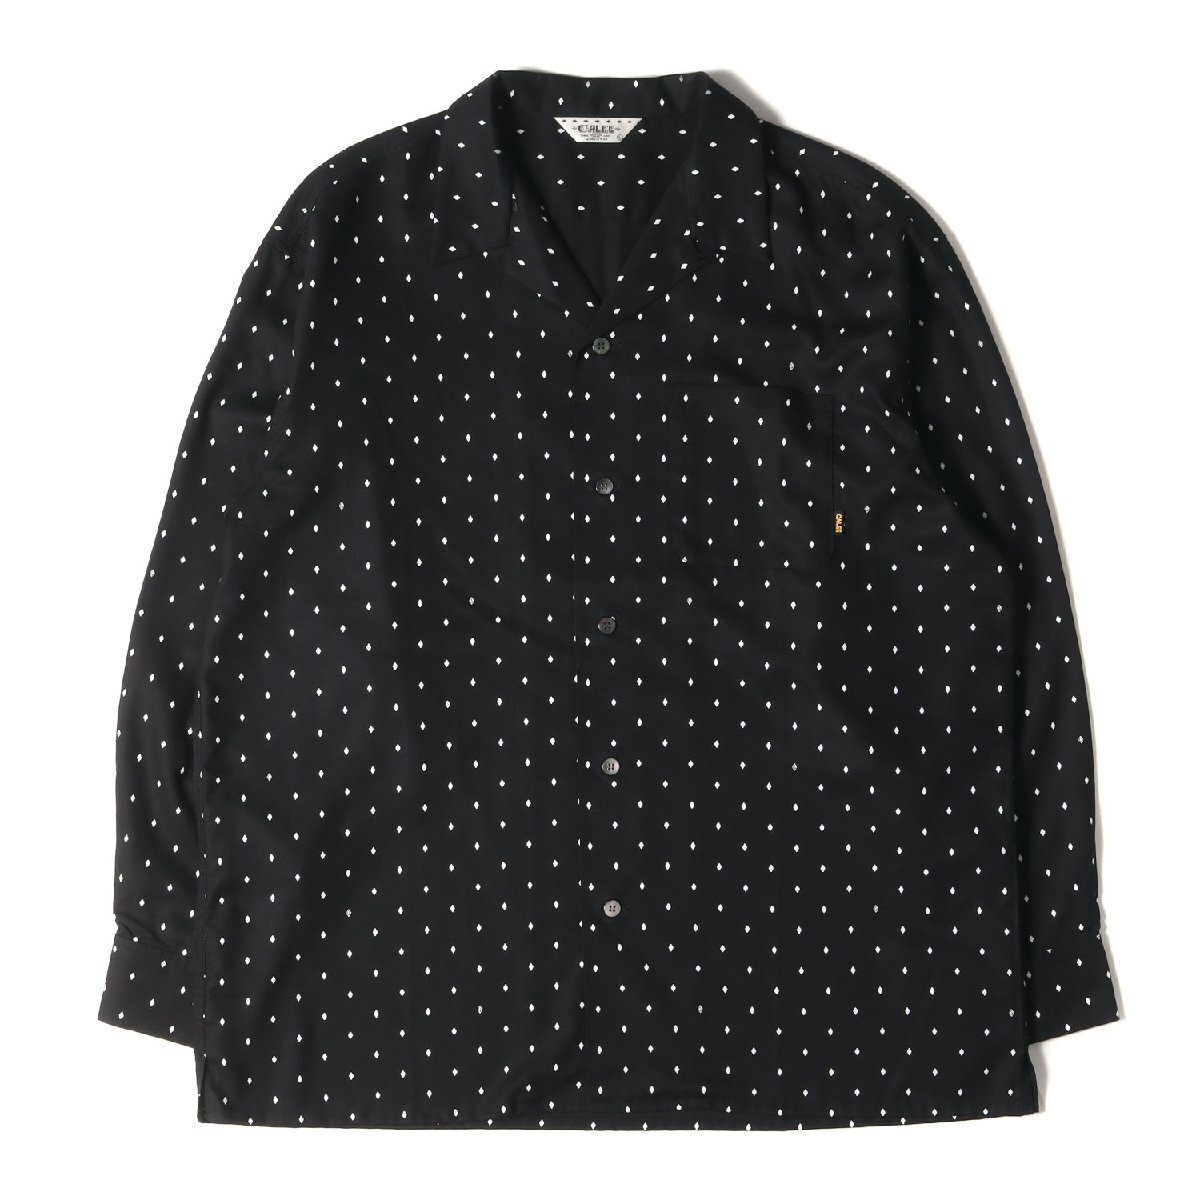 美品 CALEE キャリー シャツ サイズ:L 22AW ダイヤドット柄 オープンカラー 長袖シャツ Rhombus dot pattern R/P shirt ブラック 黒_画像1